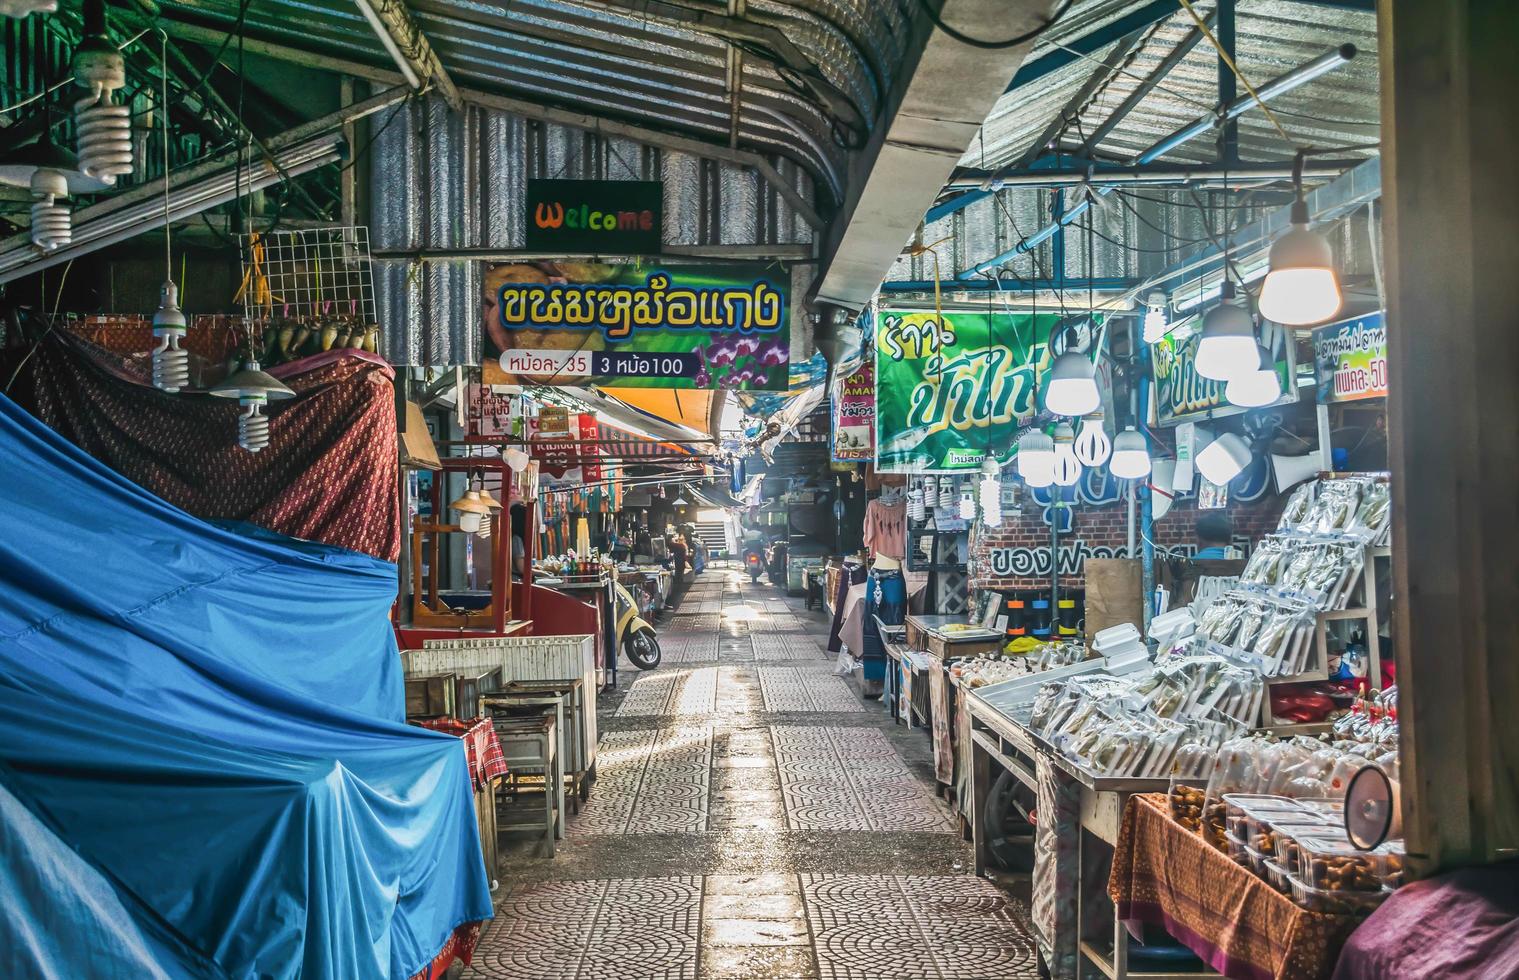 meio ambiente, estilo de vida, mercado flutuante amphawa, samut songkhram, tailândia. ano 2020 foto